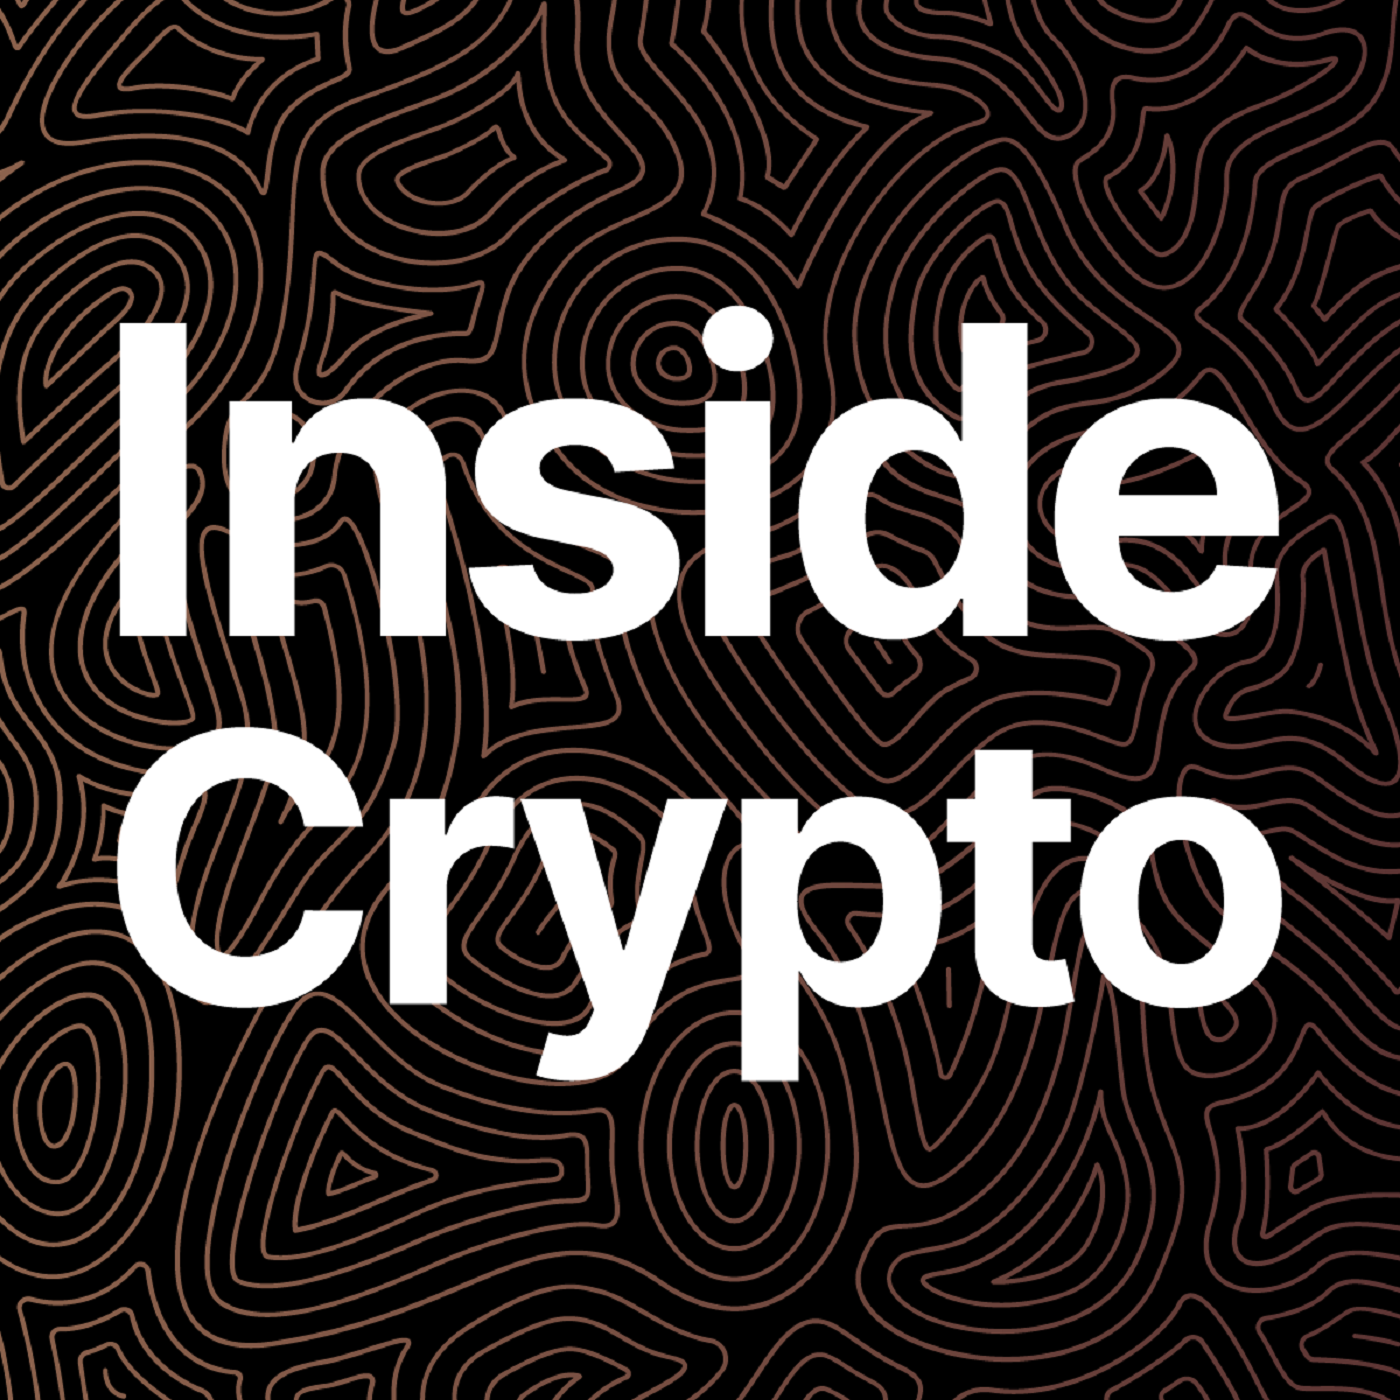 Inside Crypto